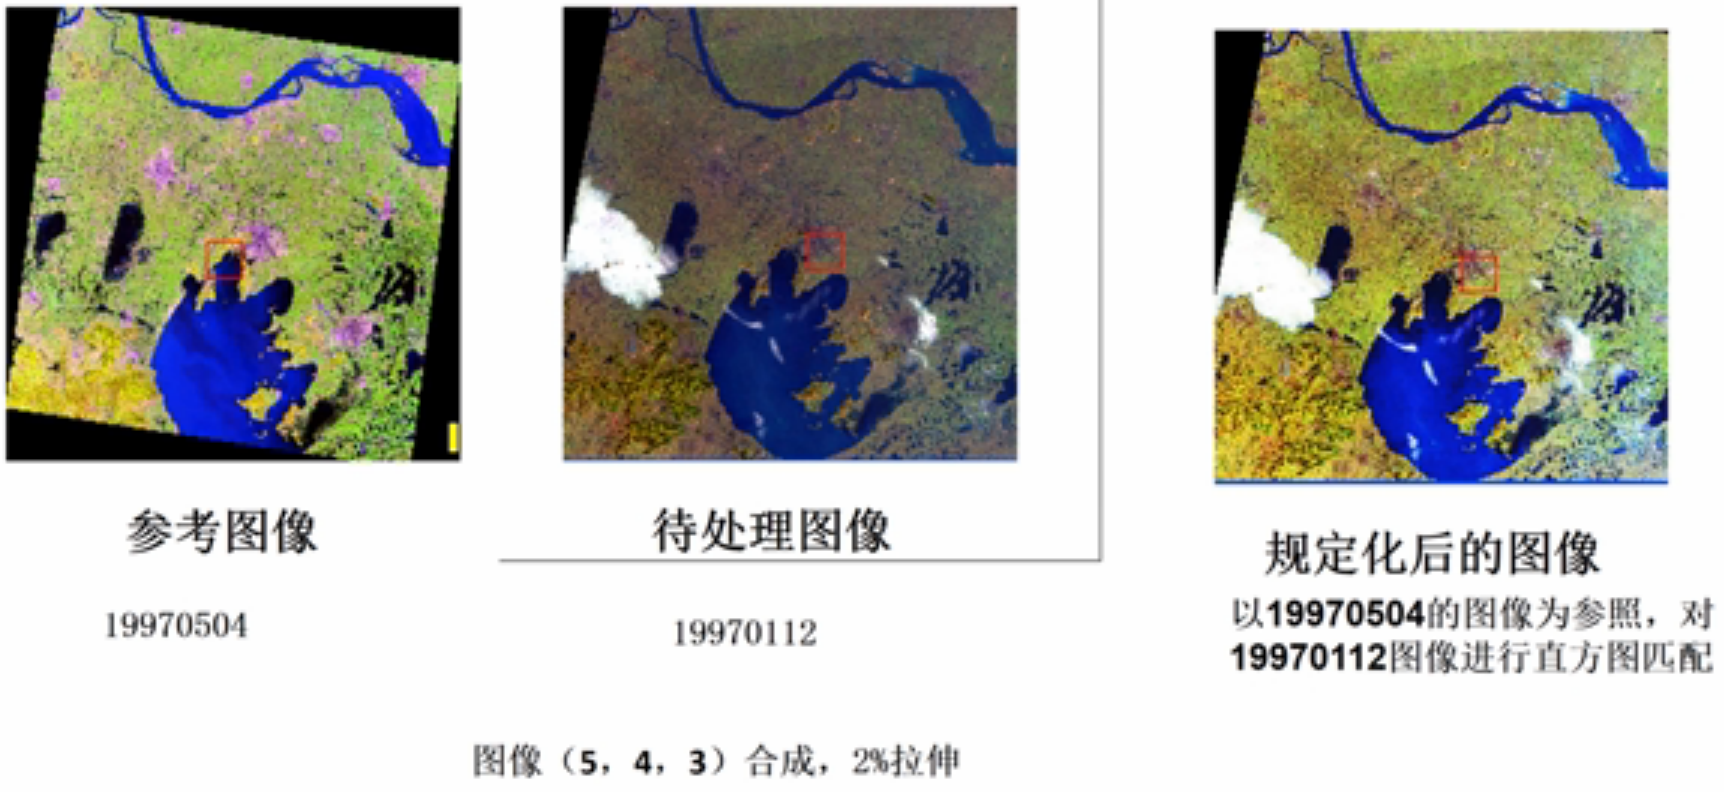 不同日期相同场景Landsat TM图像的规定化